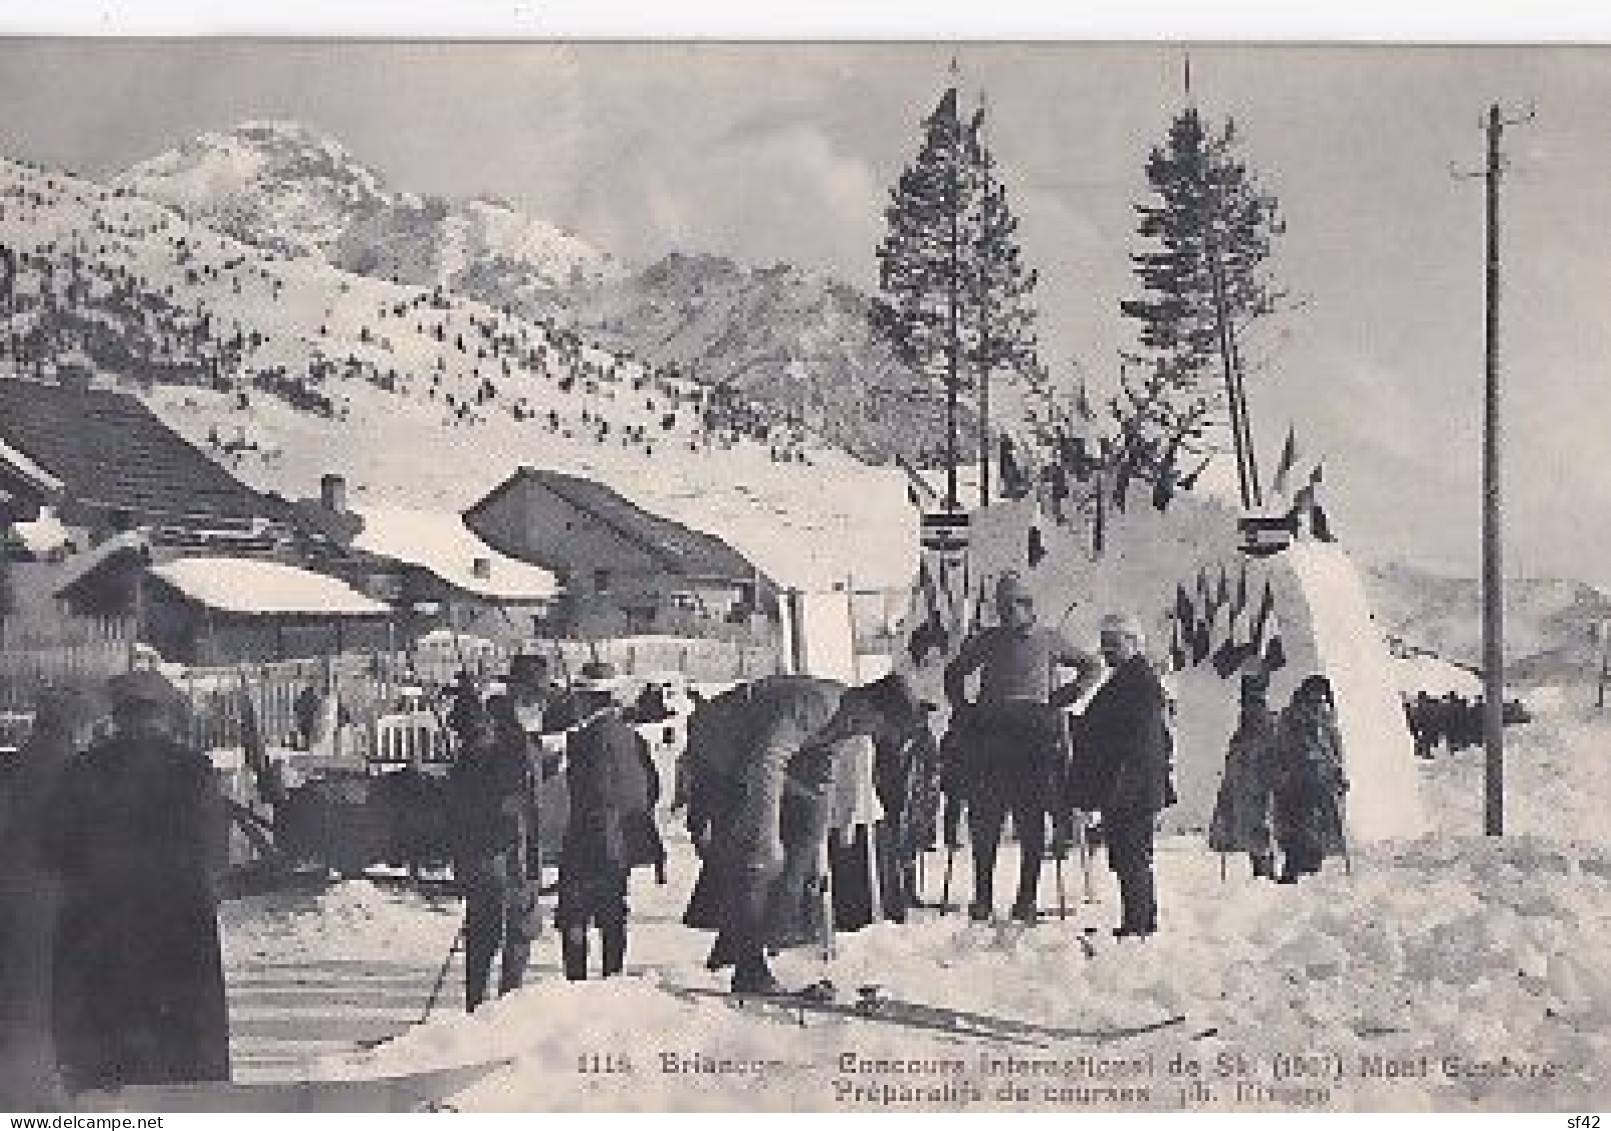 BRIANCON              CONCOURS INTERNATIONAL DE SKI  1907.  MONT GENEVRE          PREPARATIFS DE COURSES - Winter Sports